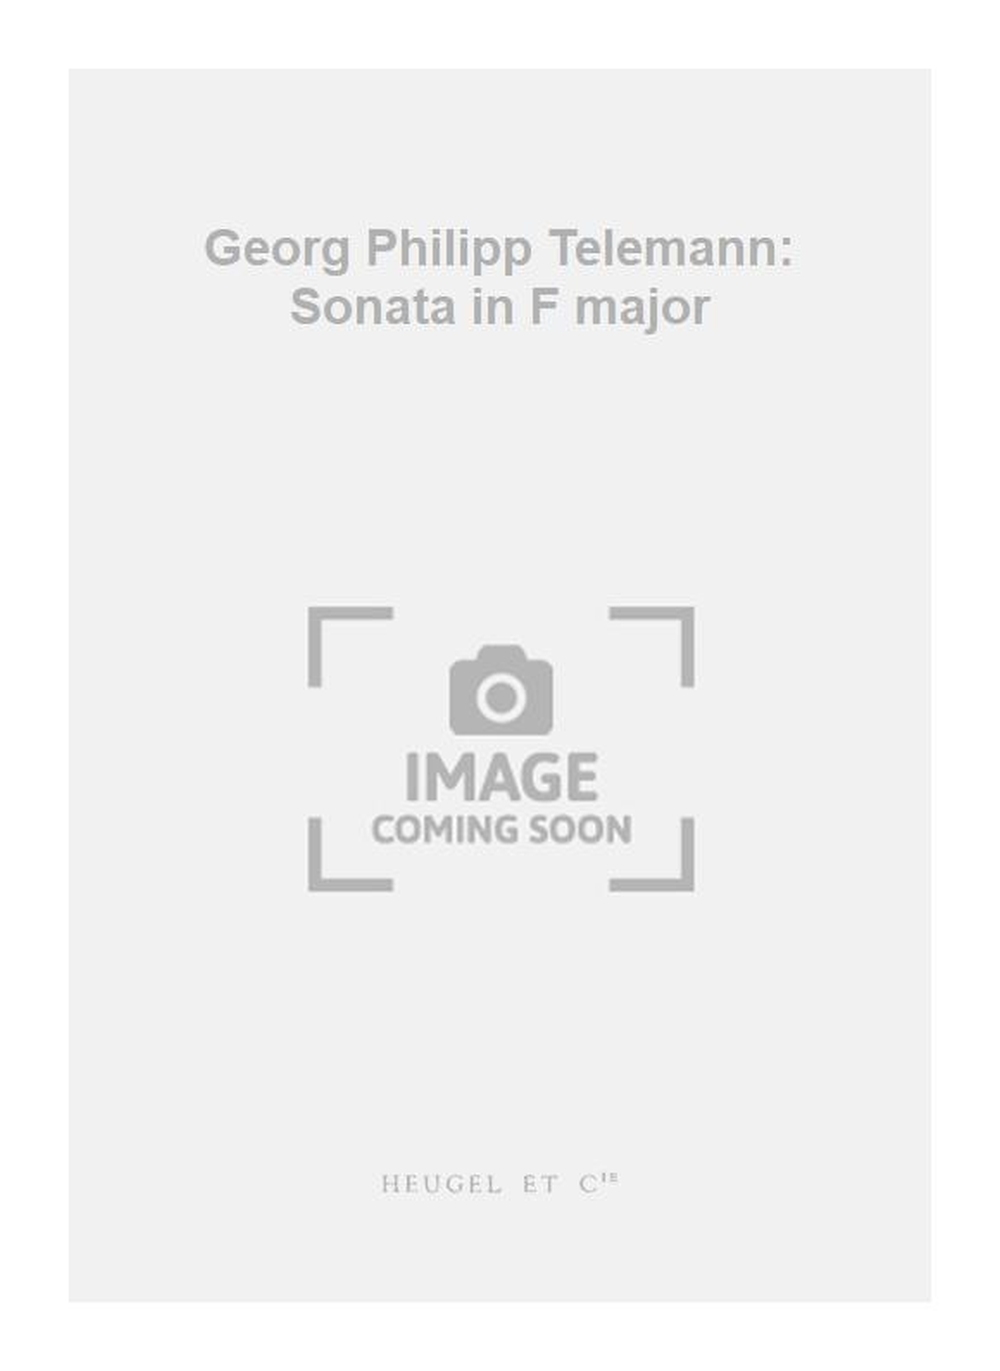 Georg Philipp Telemann: Georg Philipp Telemann: Sonata in F major